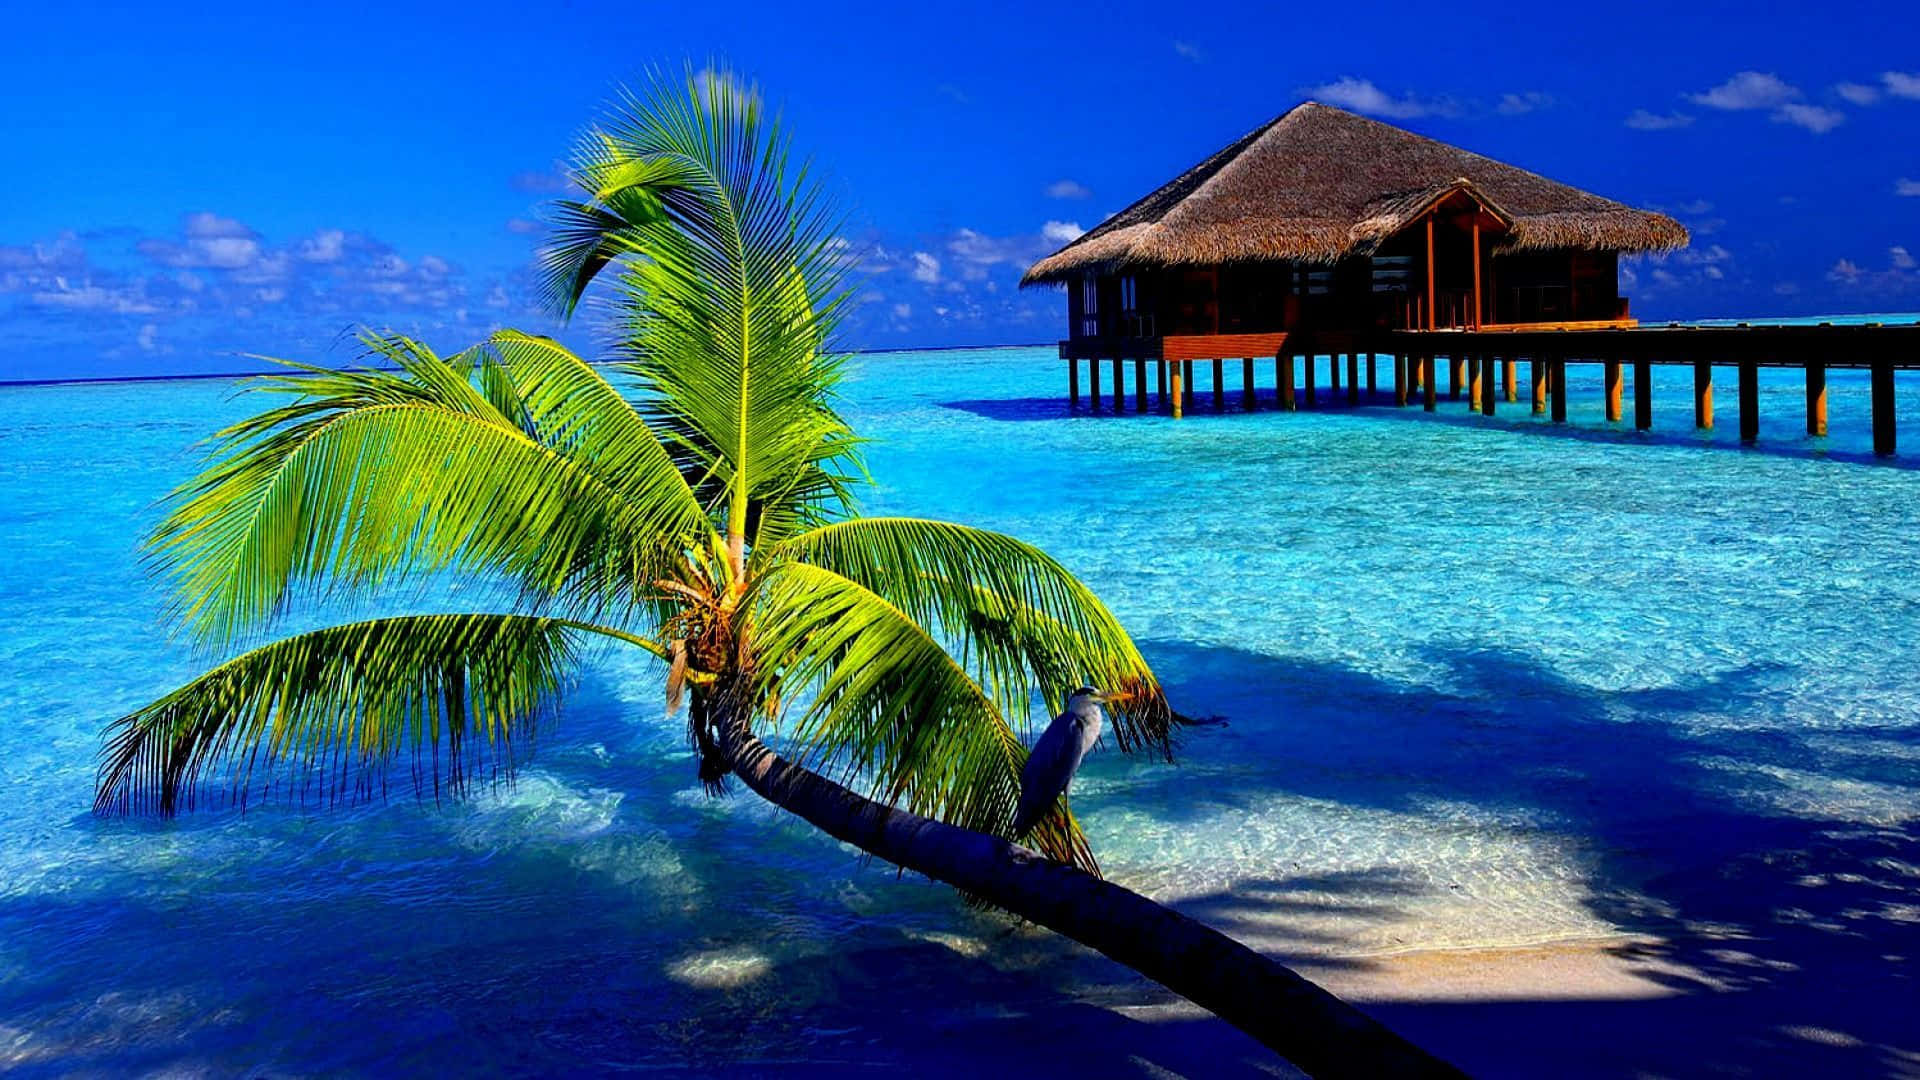 tropical island paradise background